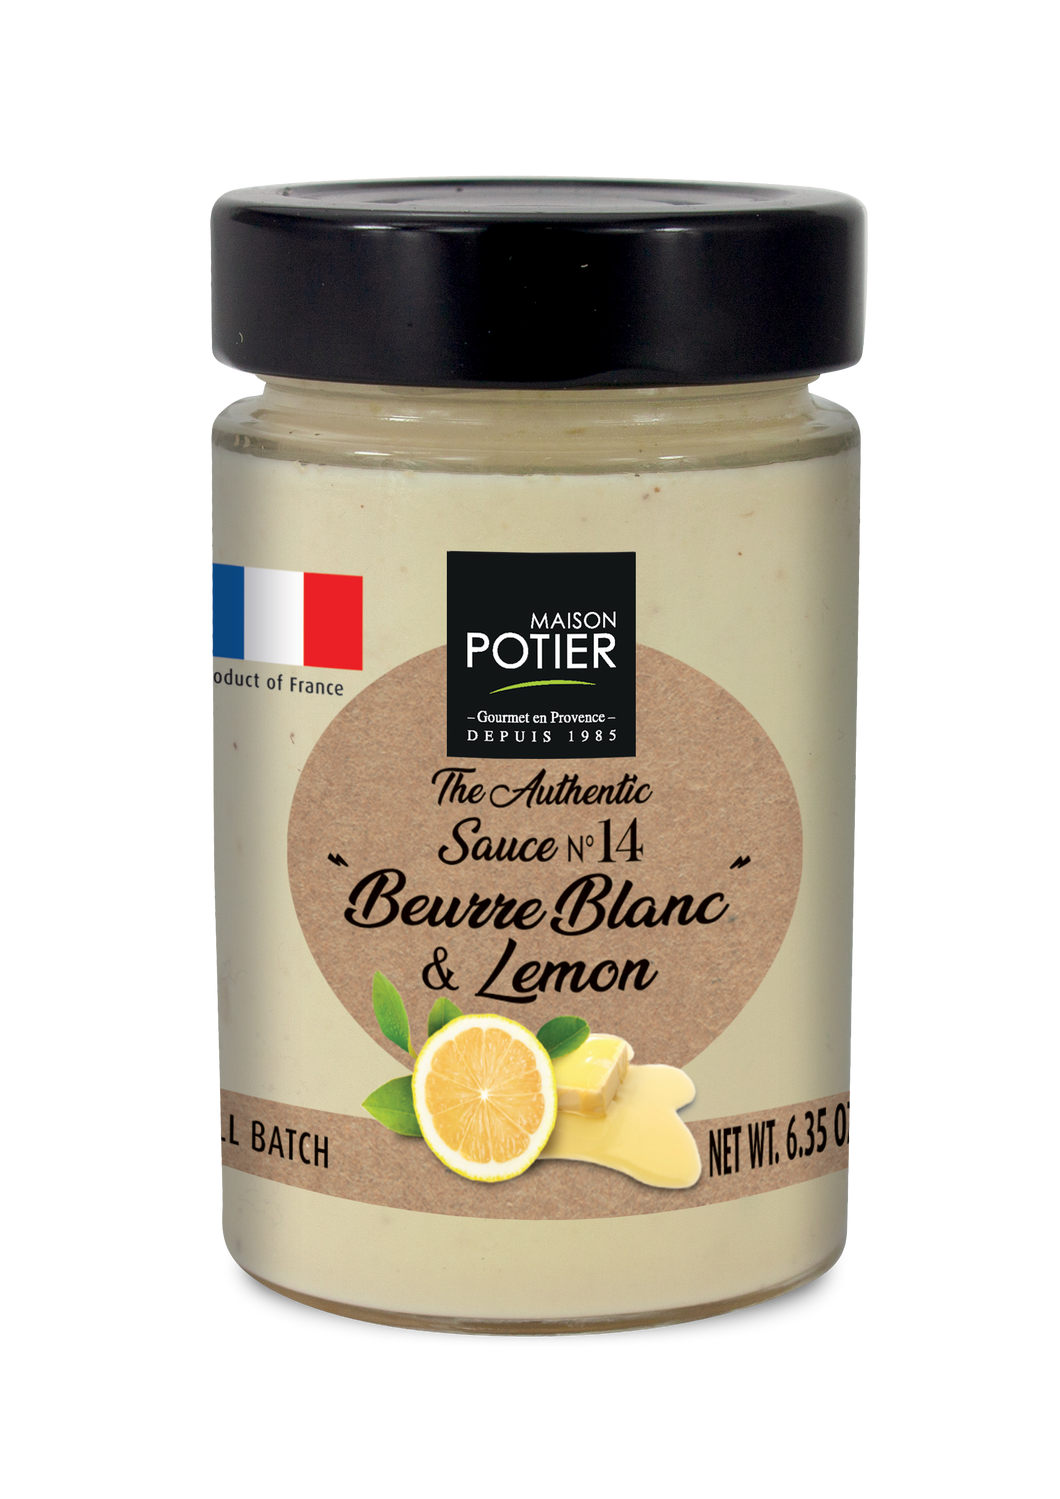 Maison Potier Beurre Blanc and Lemon Sauce, The Authentic Sauce N. 14, 6.35oz Jar - International Loft